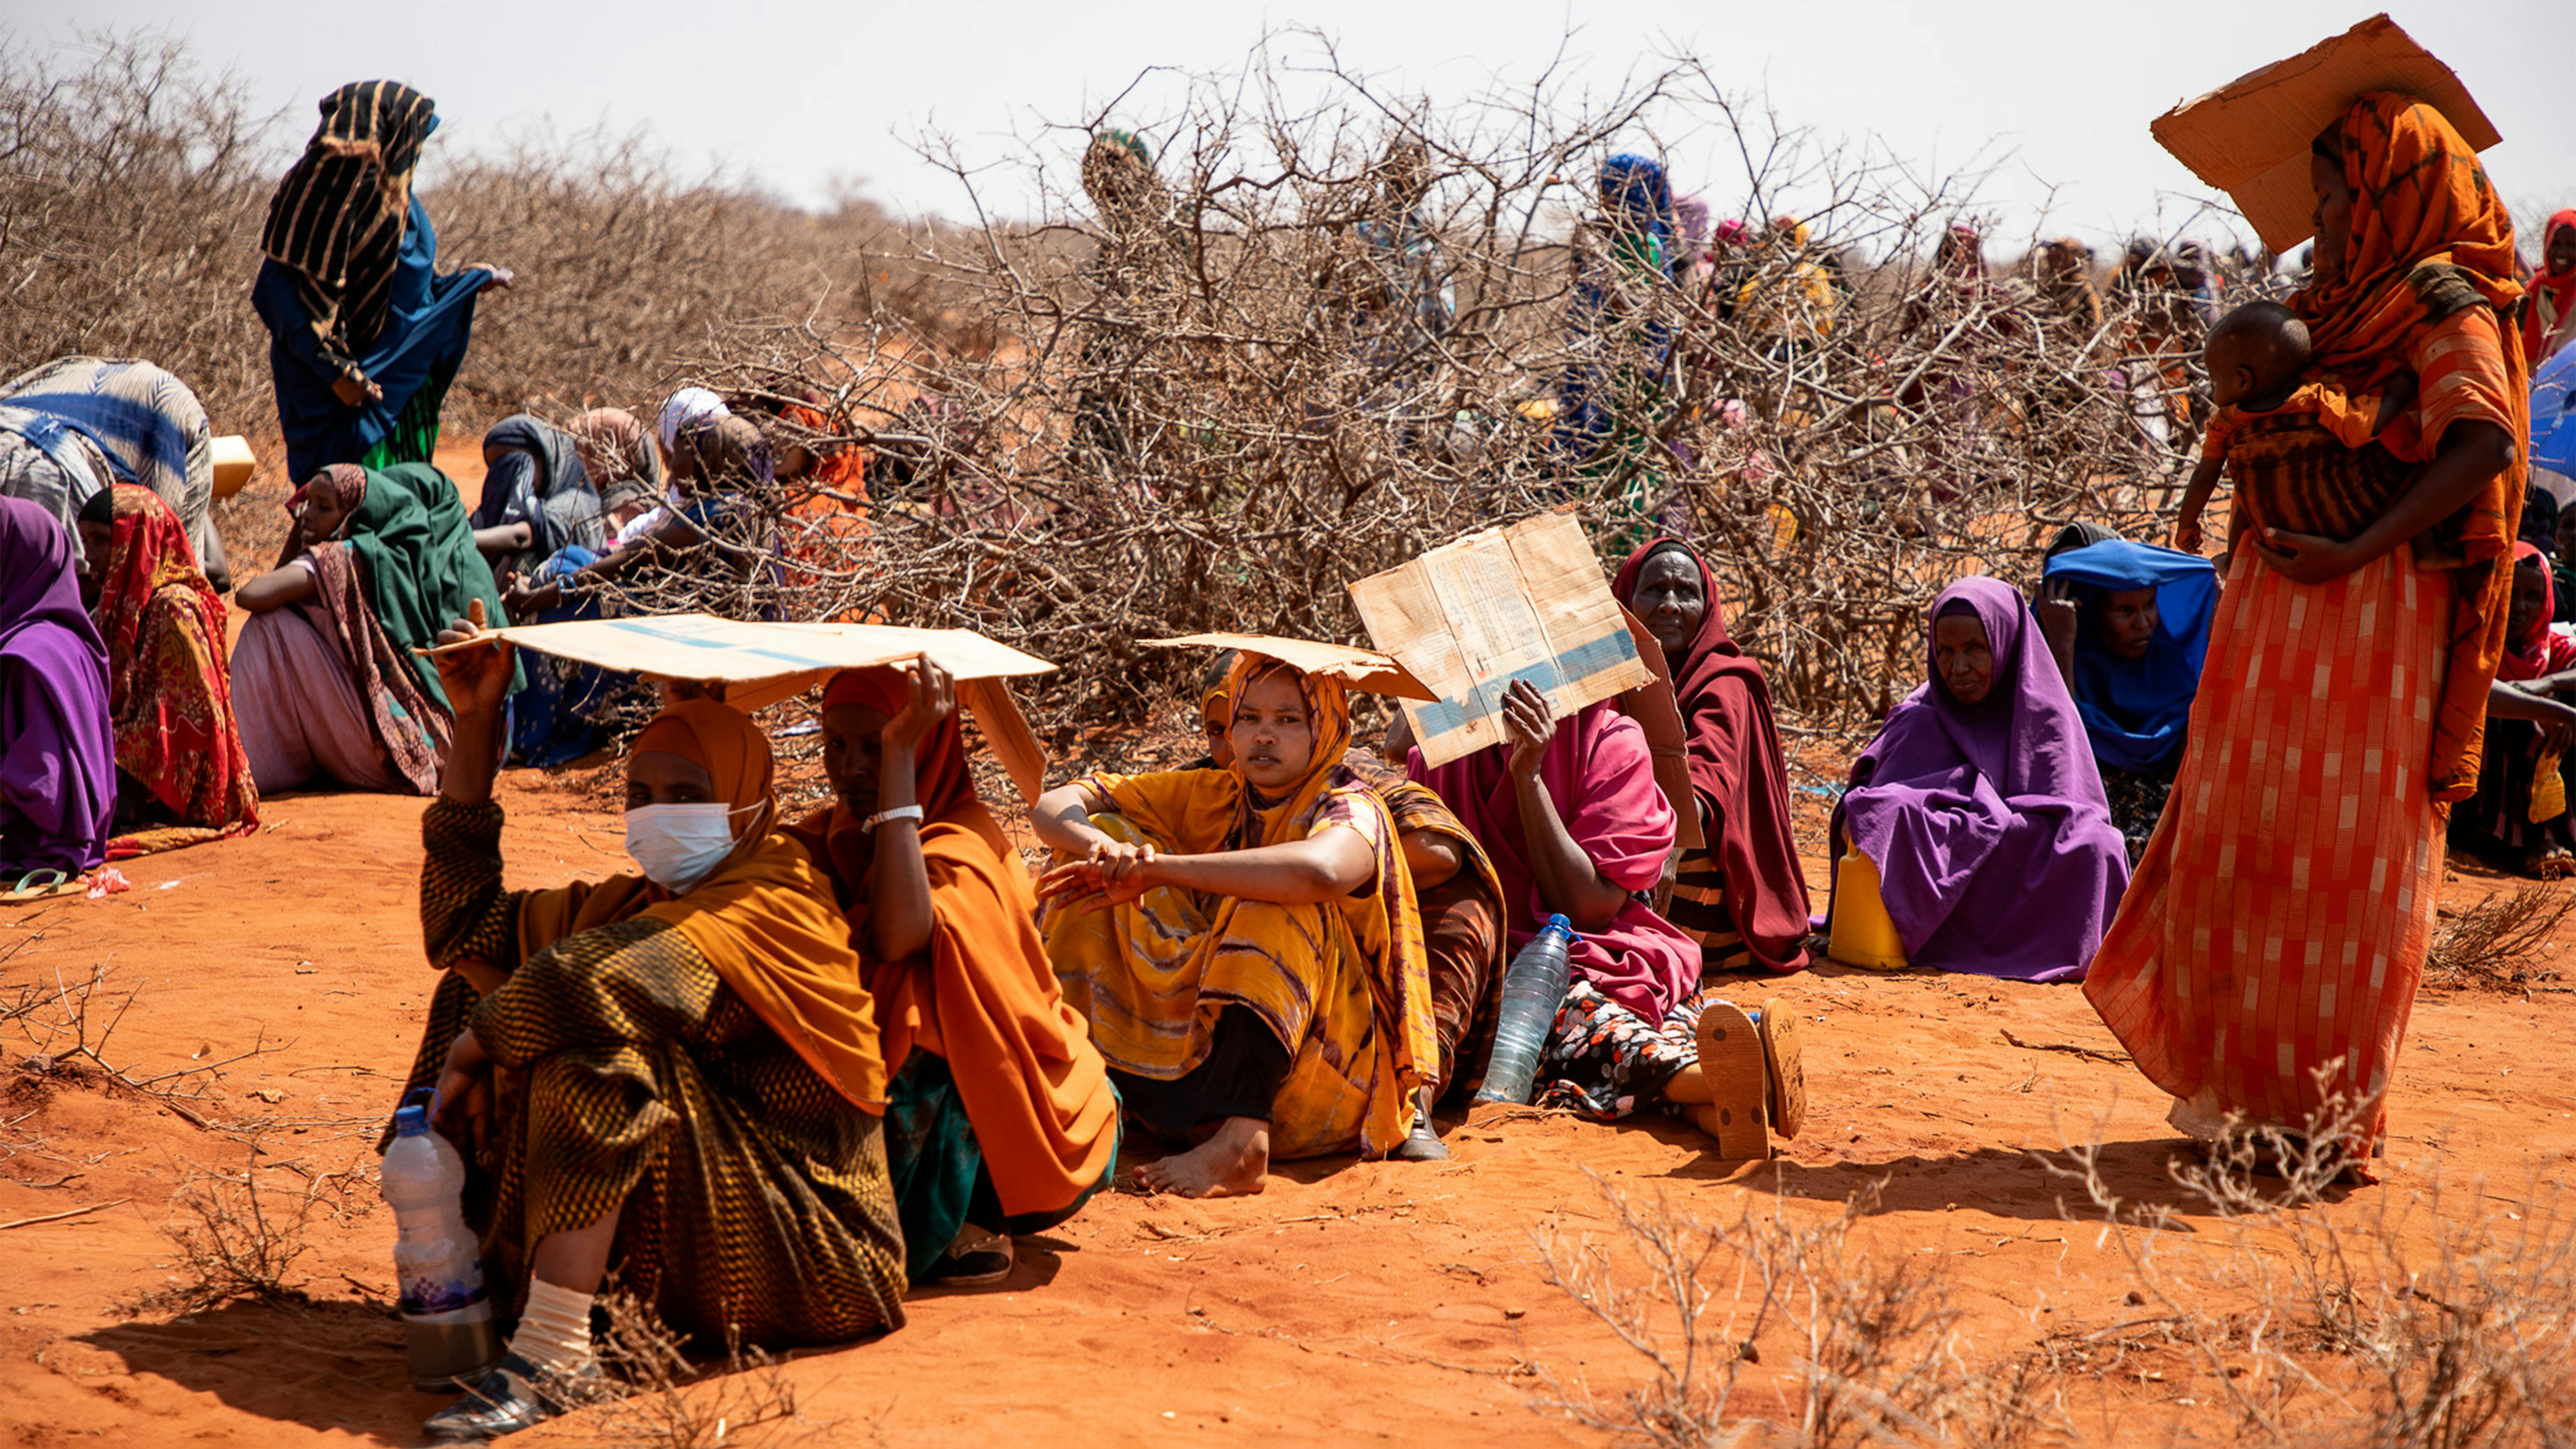 A Hegalle, regione somala in Etiopia, migliaia di uomini, donne e bambini sono in fila nel caldo soffocante in attesa di essere registrati e ricevere aiuti umanitari.